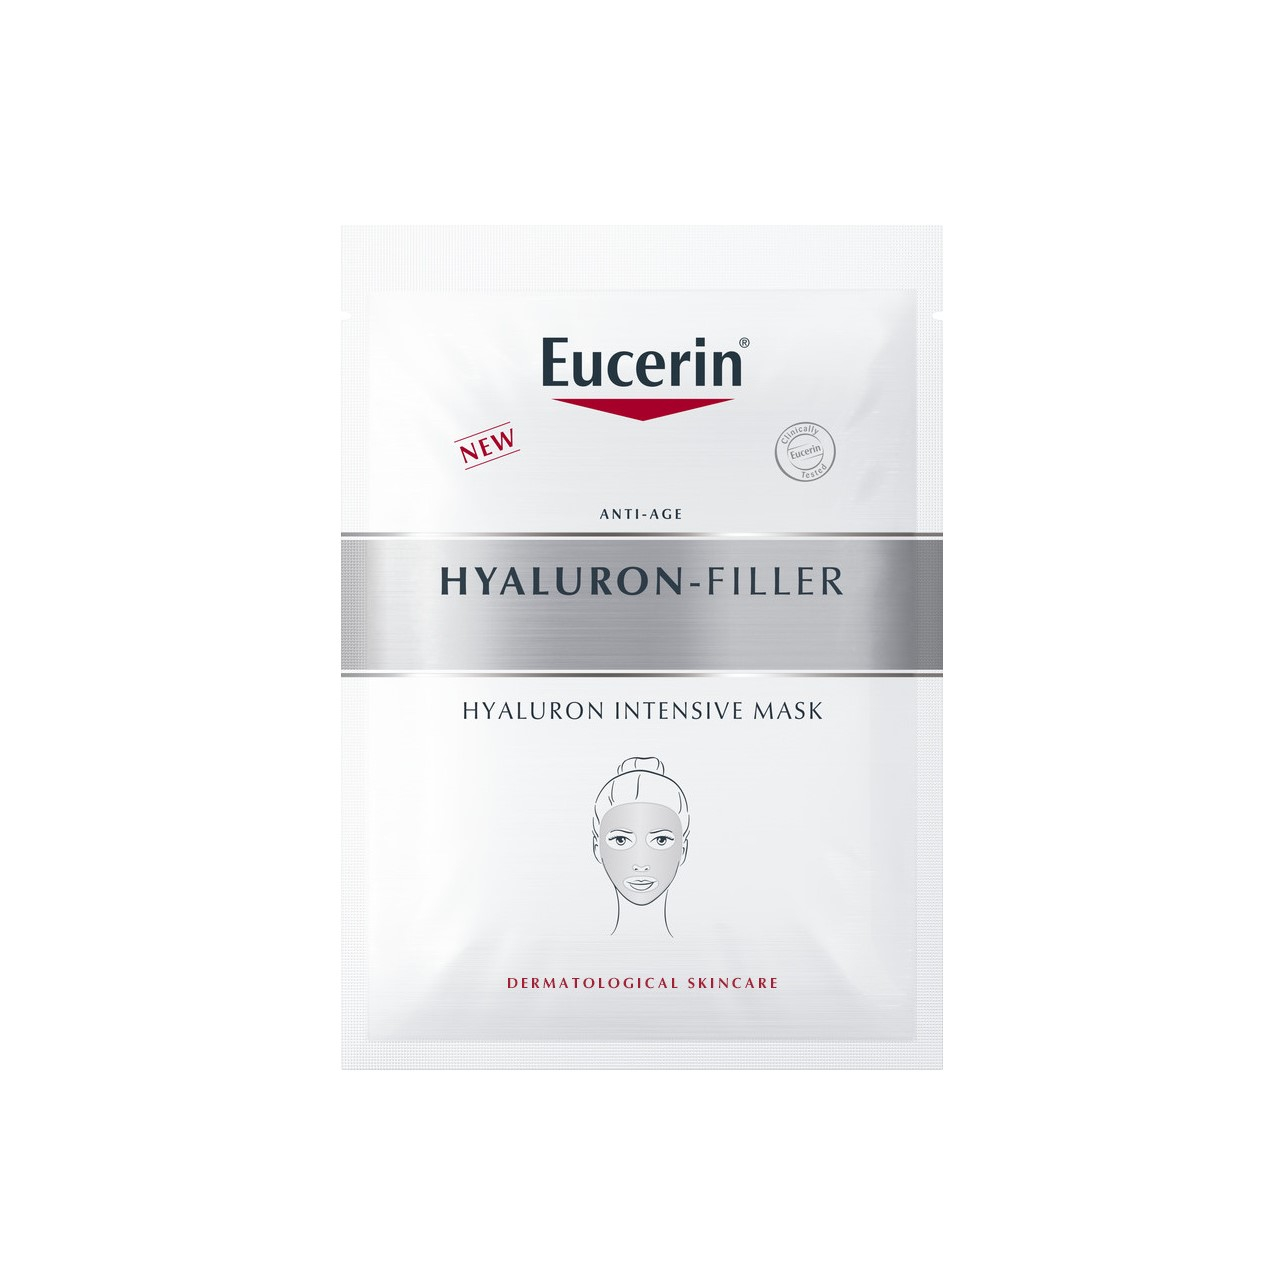 Eucerin Hyaluron-Filler Mask
